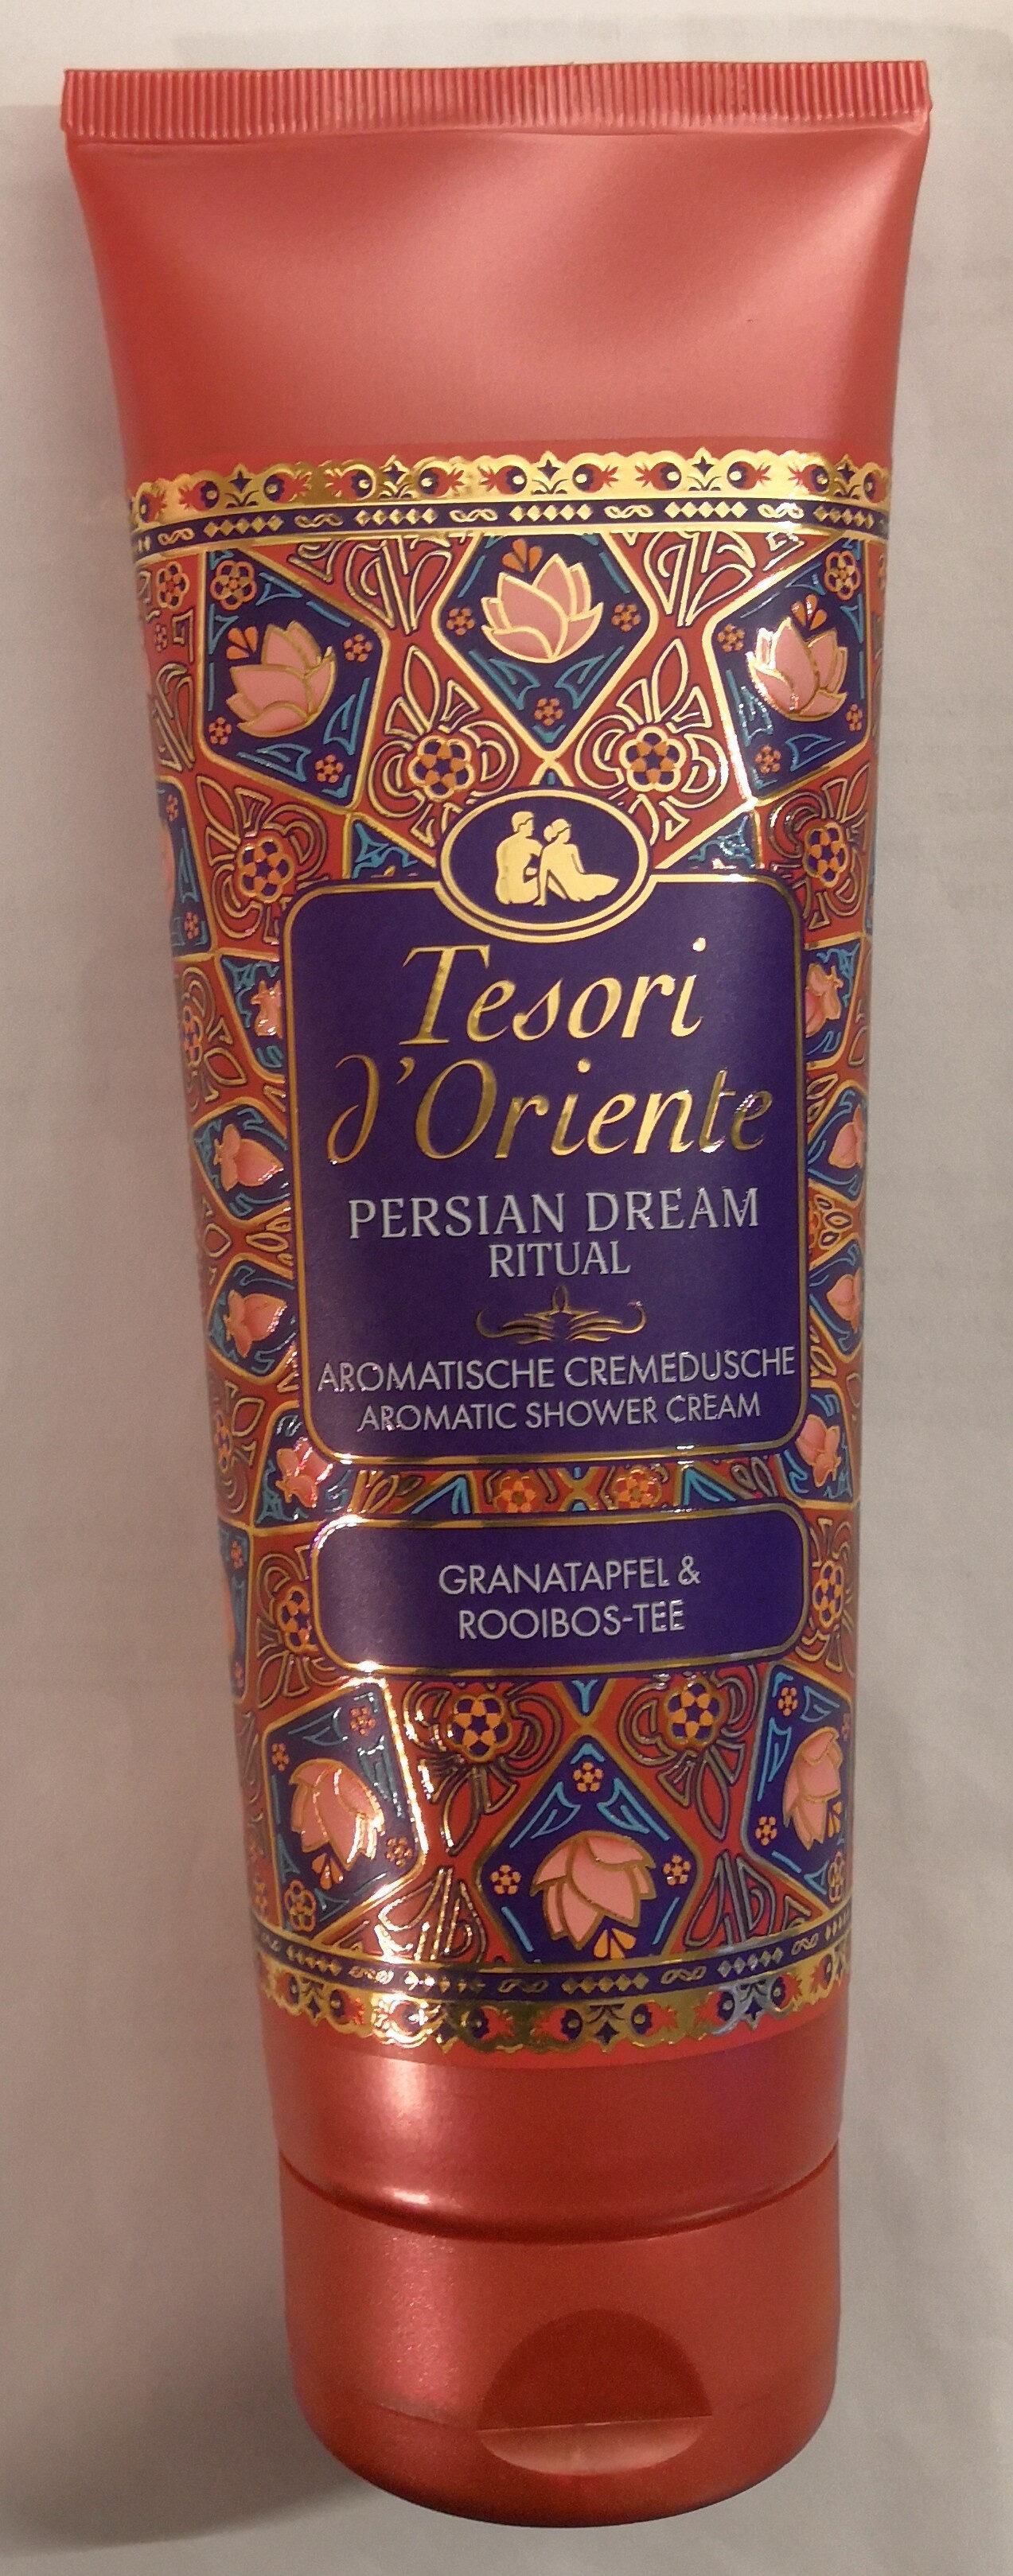 Persian Dream Ritual Granatapfel & Rooibos-Tee - Product - de